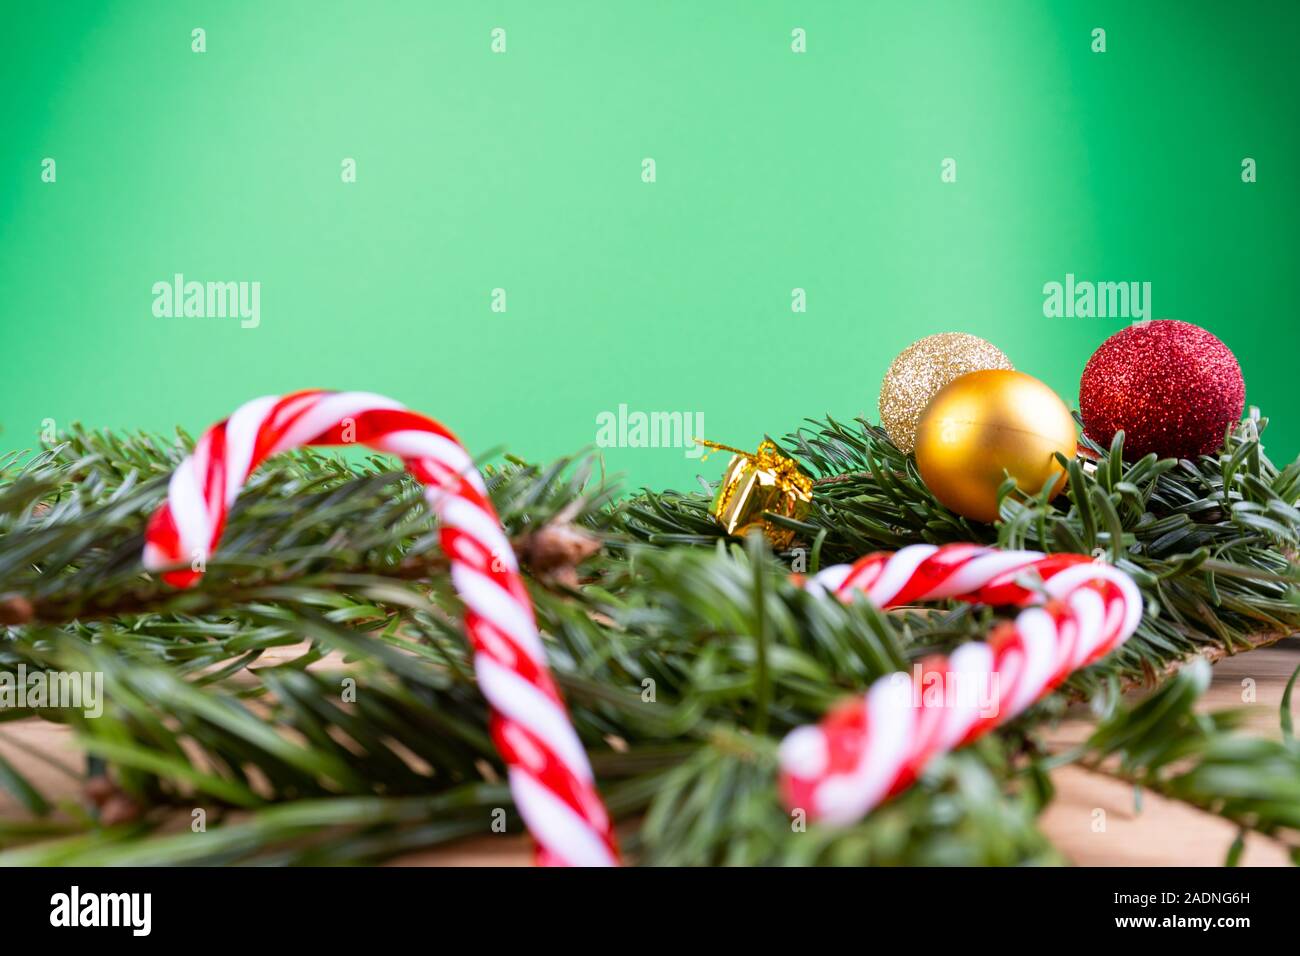 Branches de sapin vert avec des ornements de Noël (boules de Noël, des cannes de bonbon, présente, fir cone) sur une table en bois devant un fond vert avec Banque D'Images